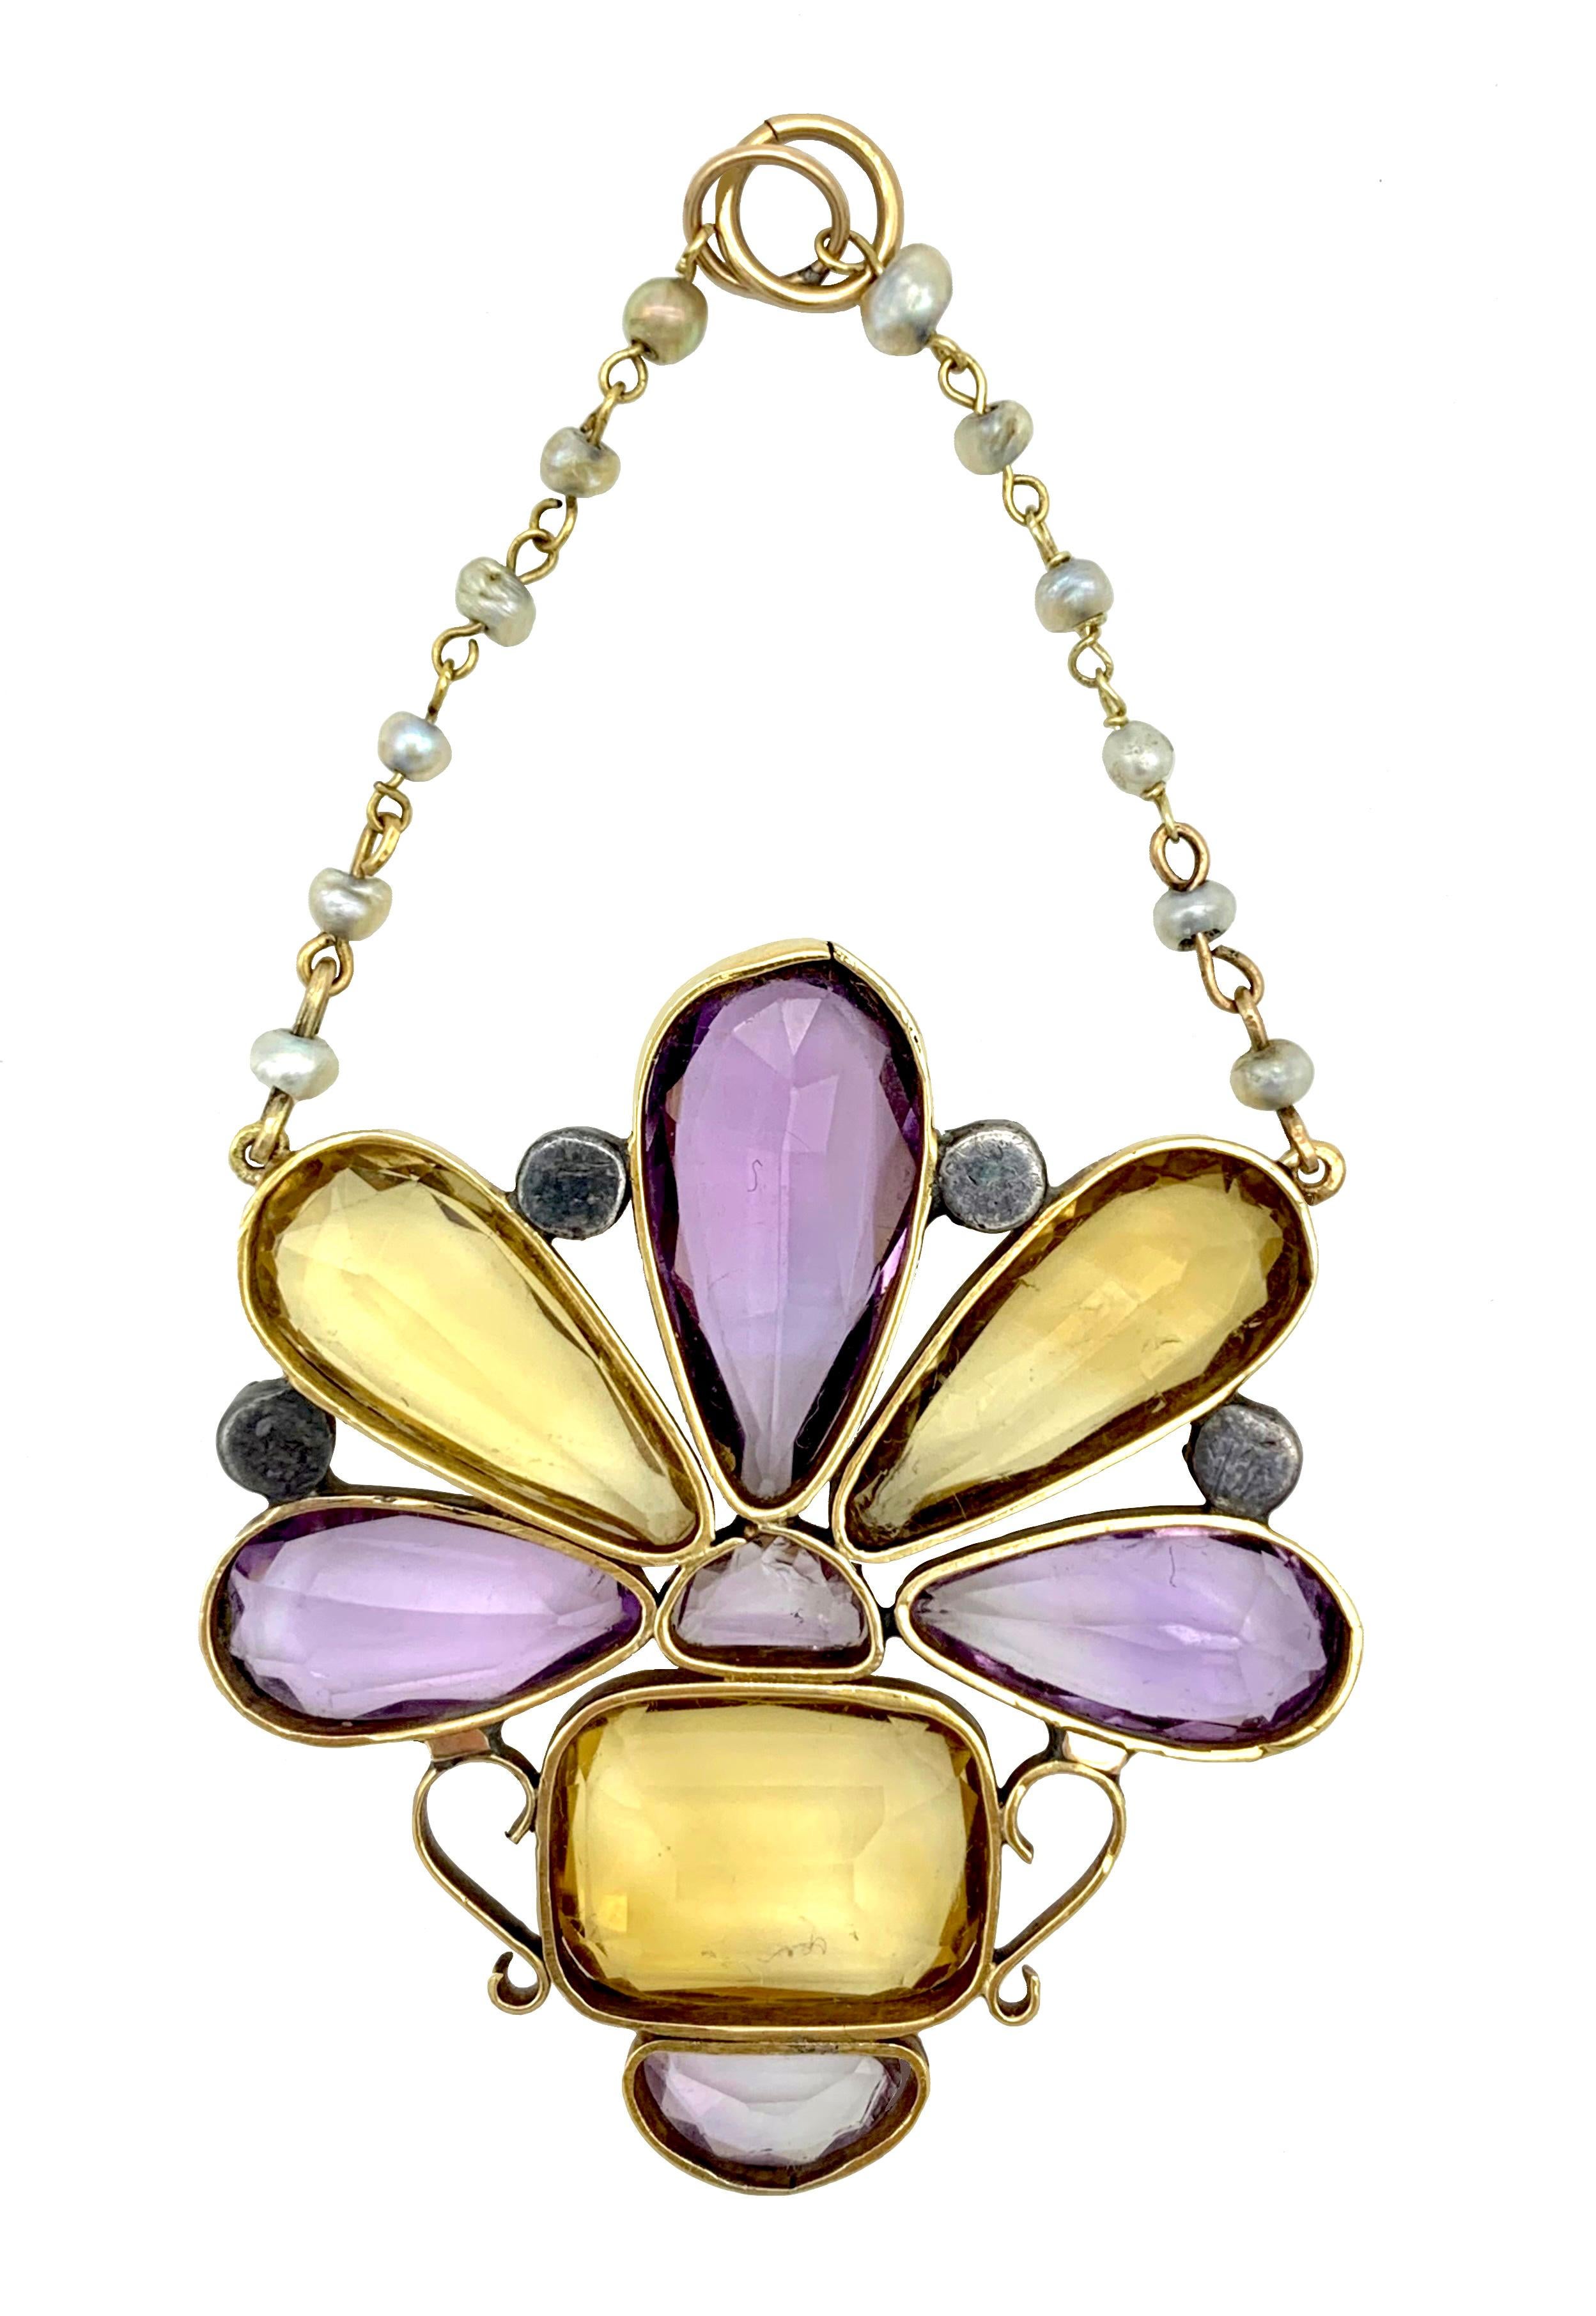 Ce bel exemple de bijou géorgien est un pendentif en or 15 carats conçu comme un bouquet de fleurs dans un vase, une gardinière. Deux citrines et trois améthystes, facettées et taillées en forme de goutte,  alternent avec des diamants roses sertis